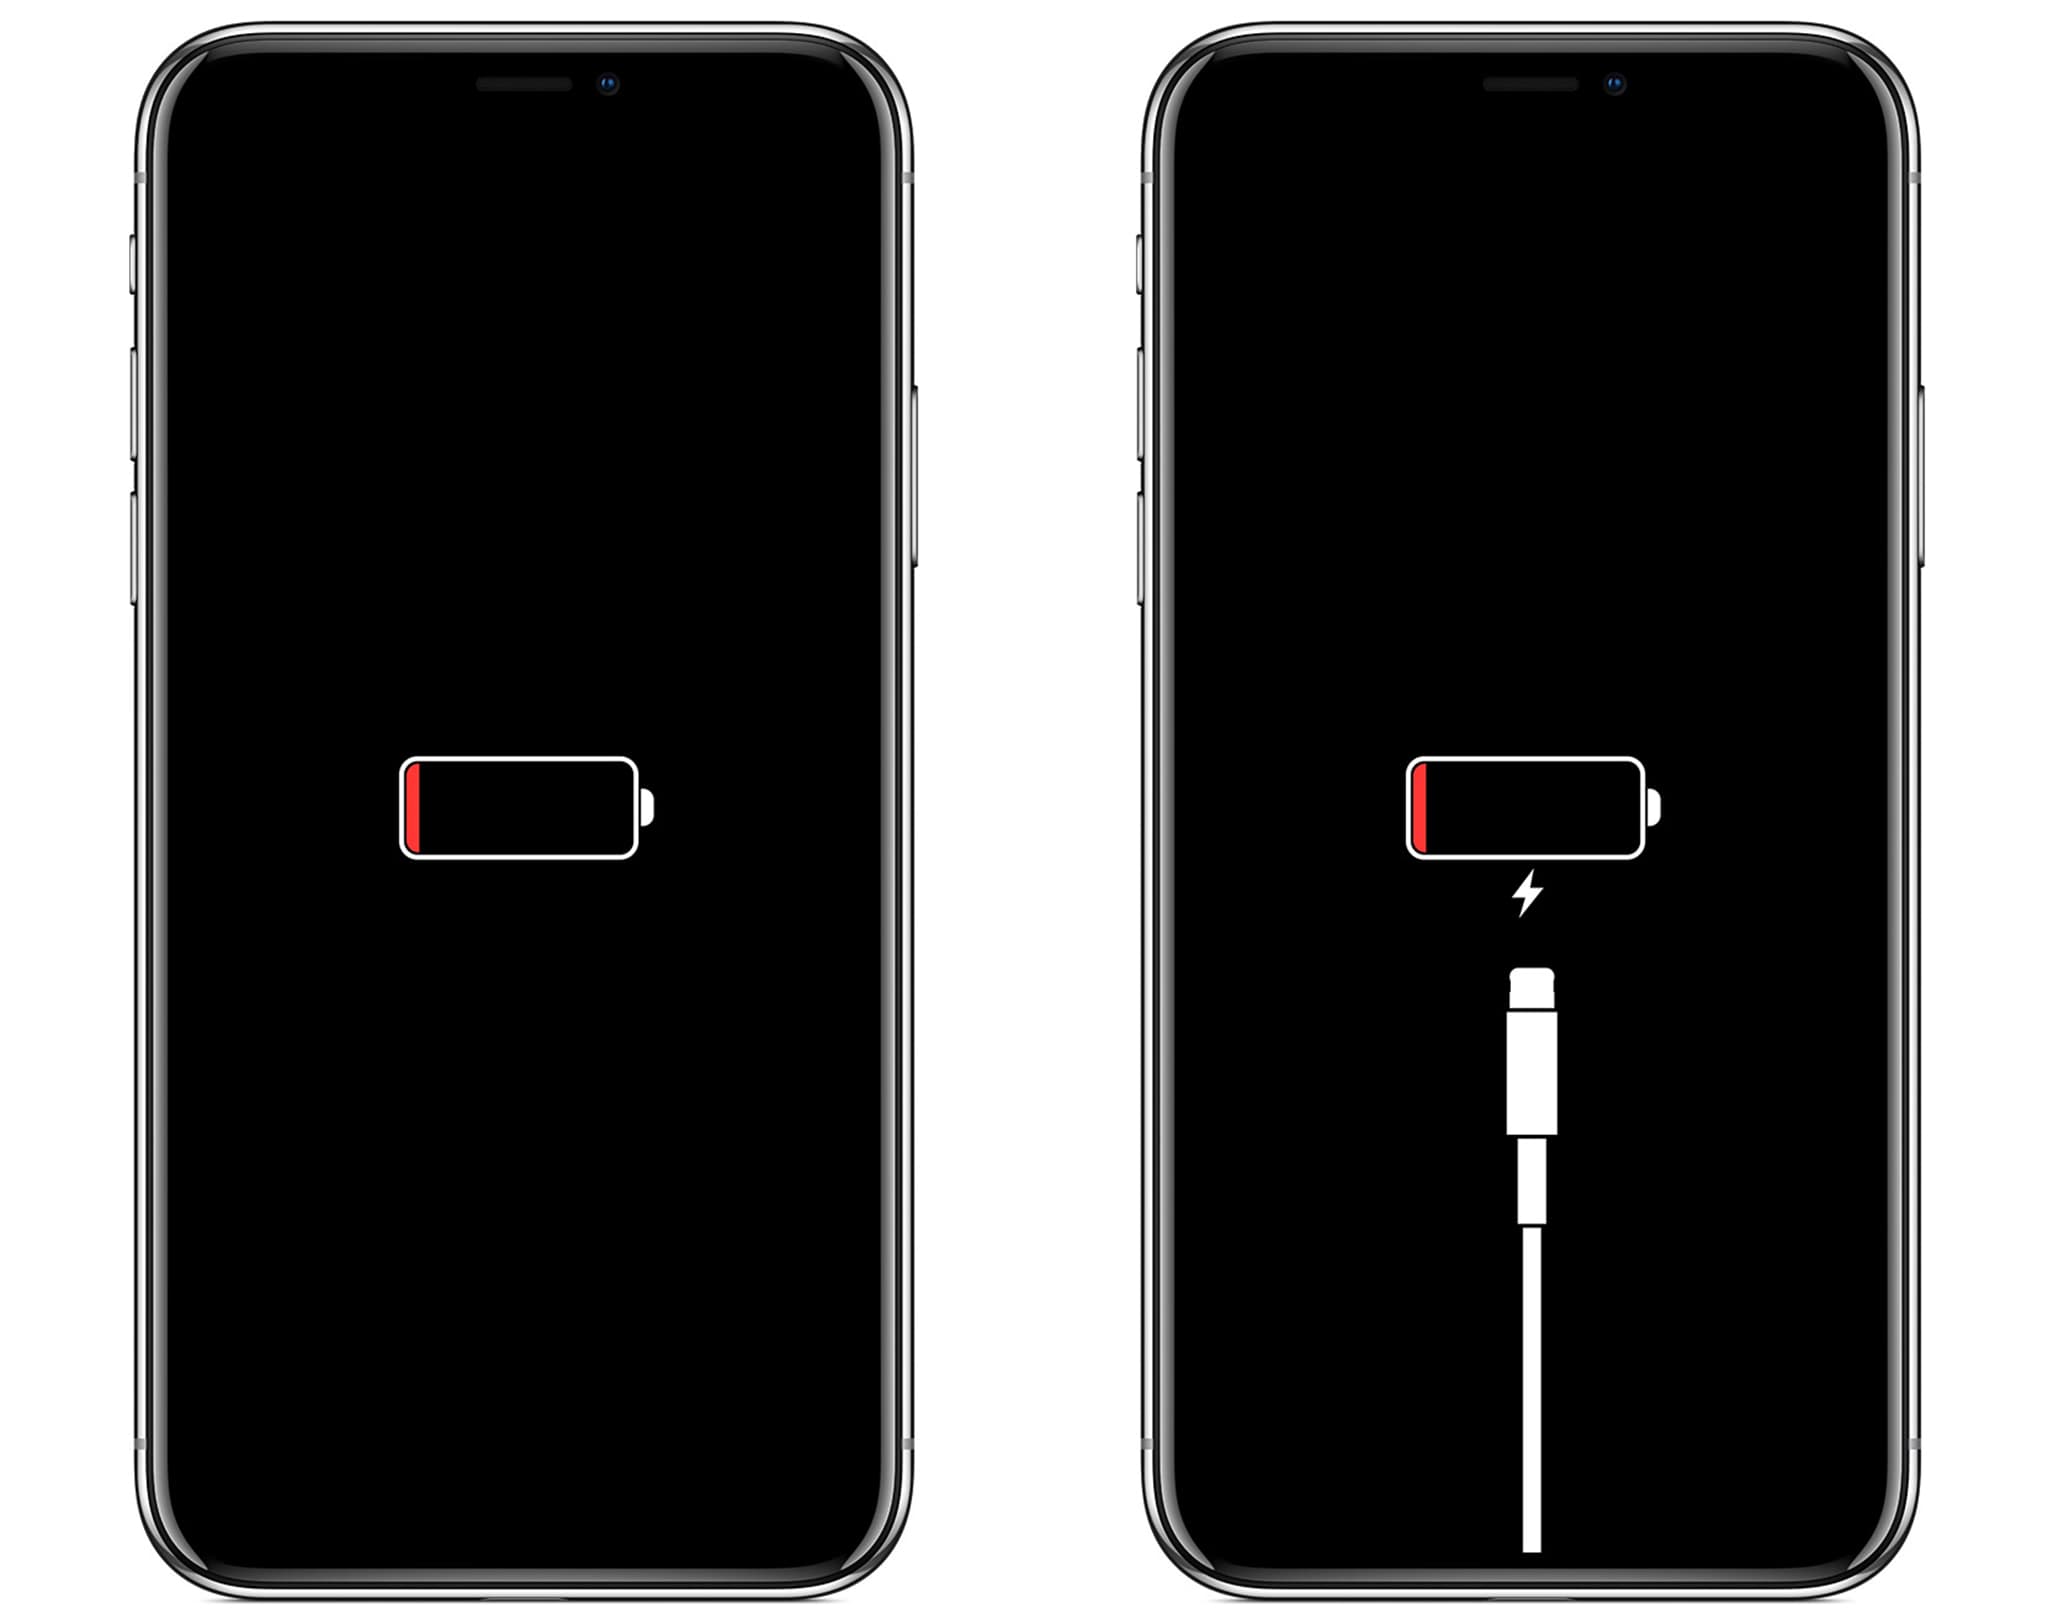 Cách khắc phục khi iPhone sạc không lên nguồn do hết pin